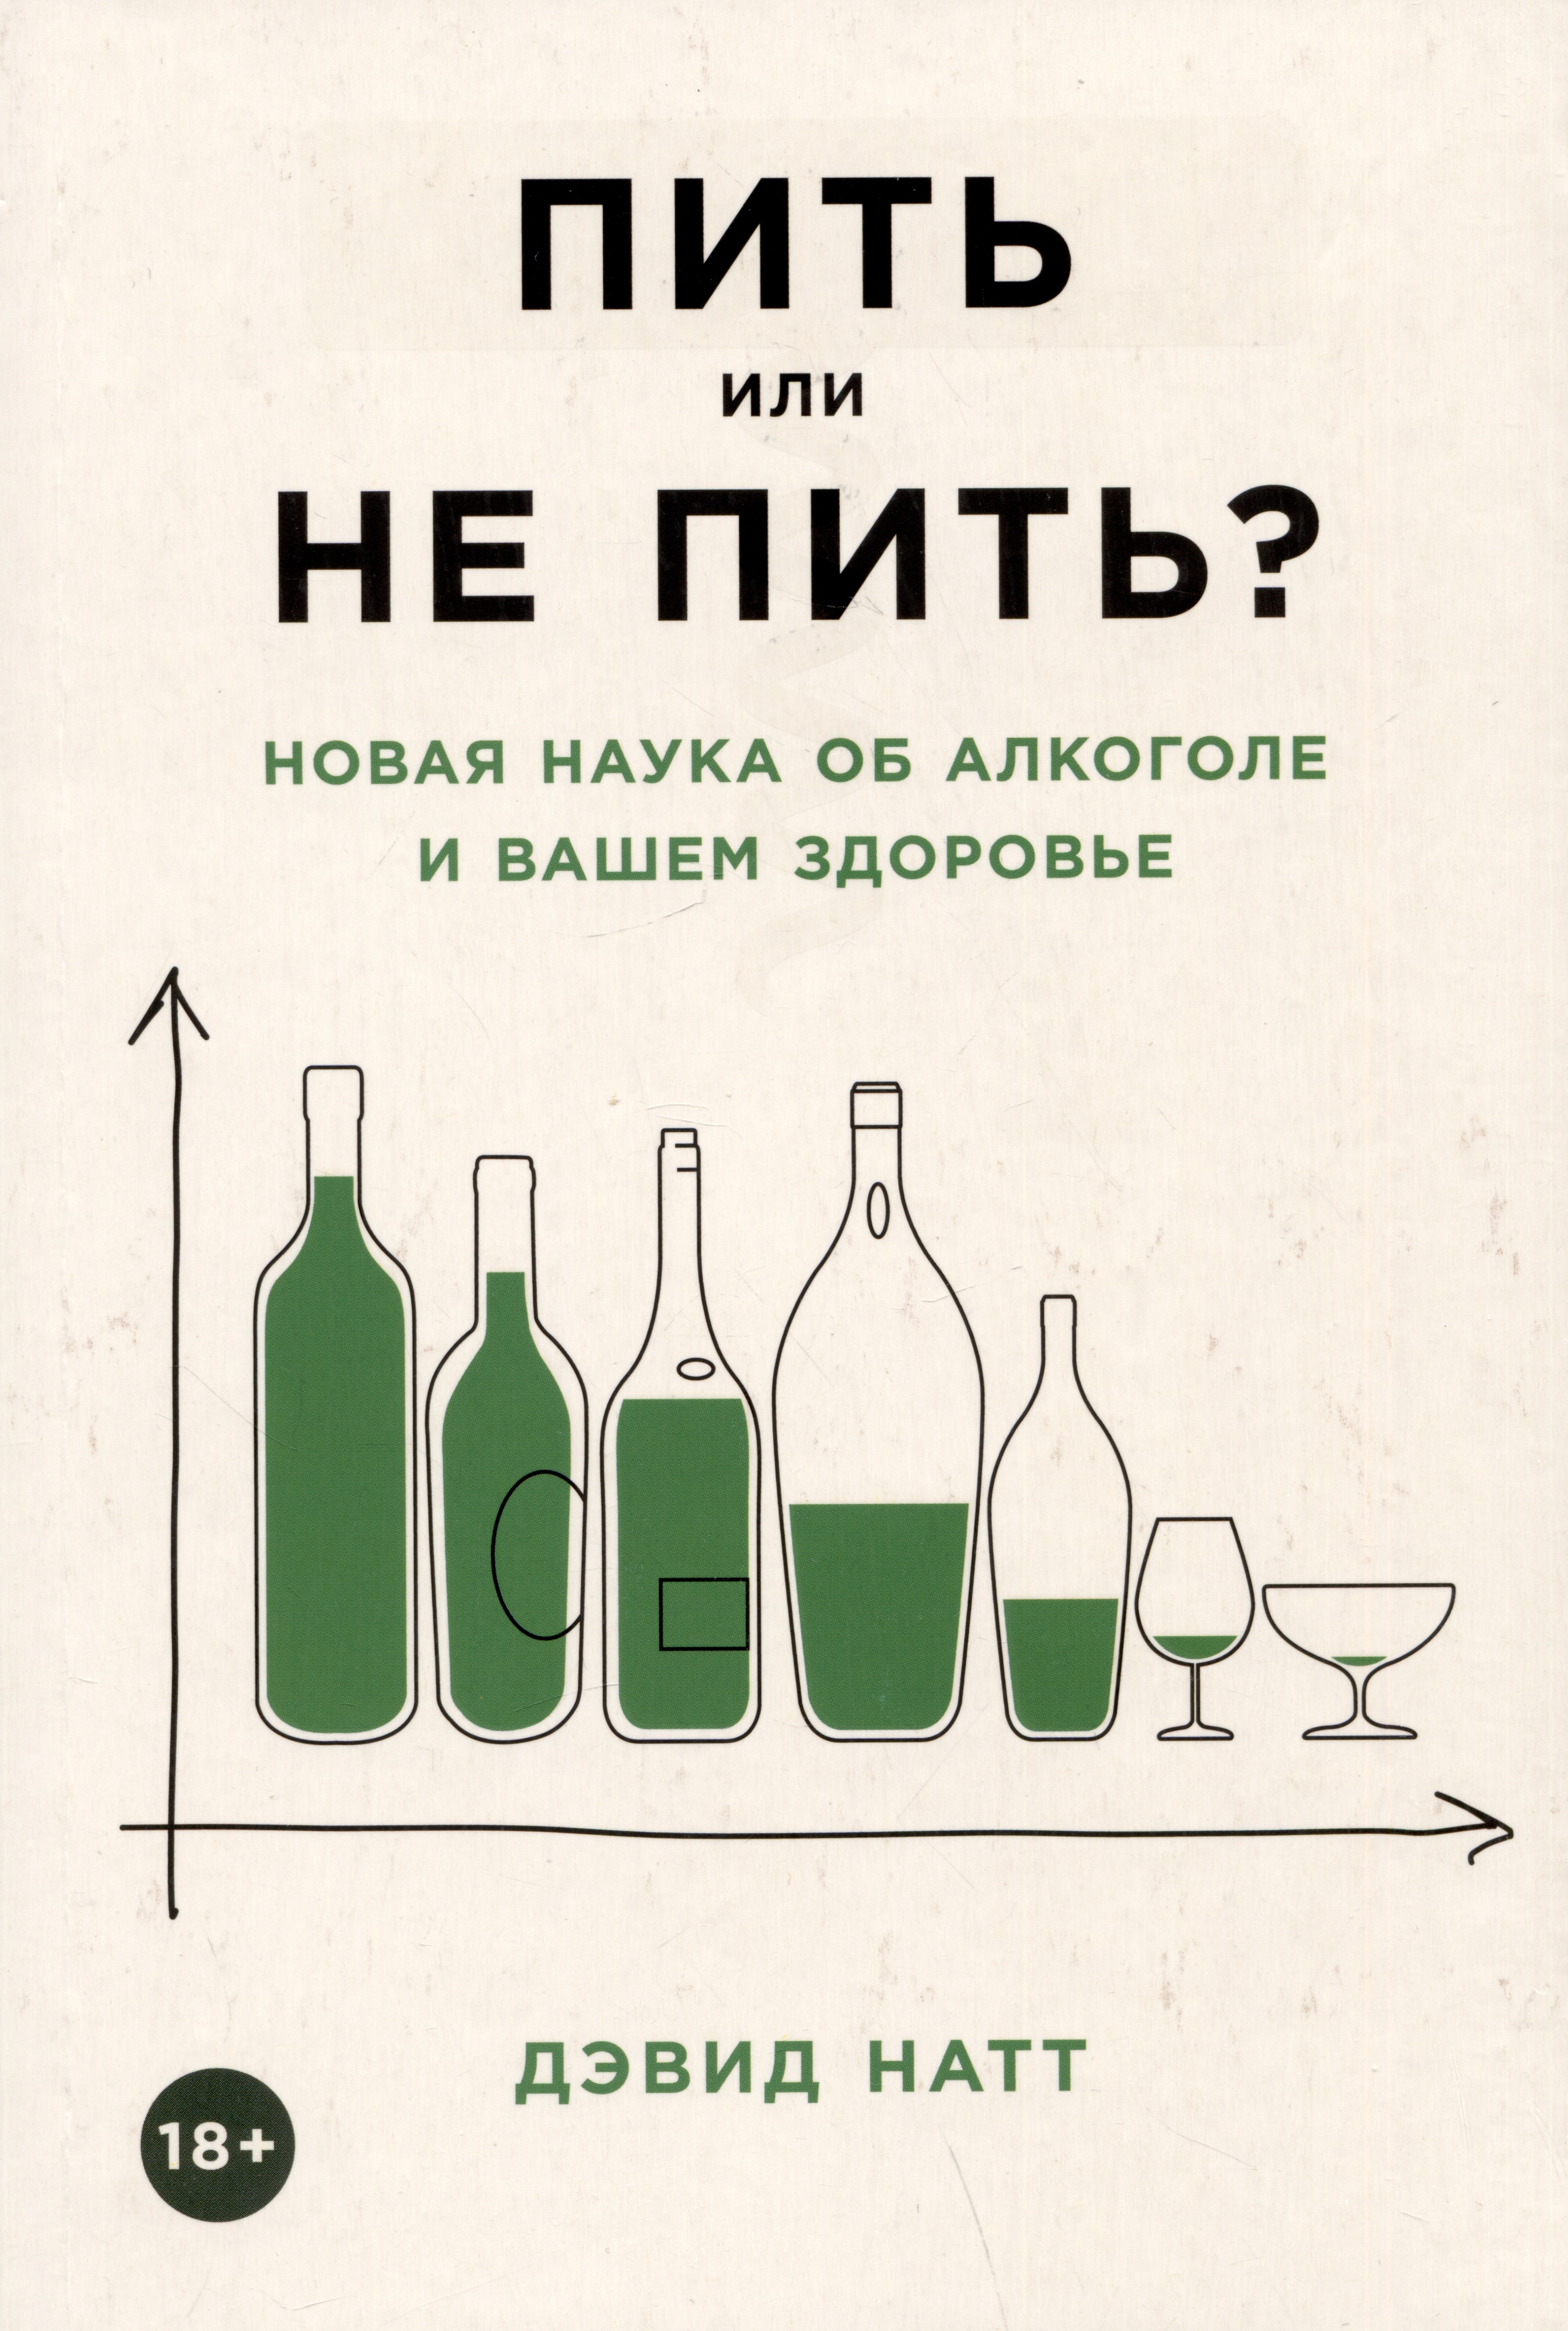 Натт Дэвид Пить или не пить? Новая наука об алкоголе и вашем здоровье монета ответы пить точно пить